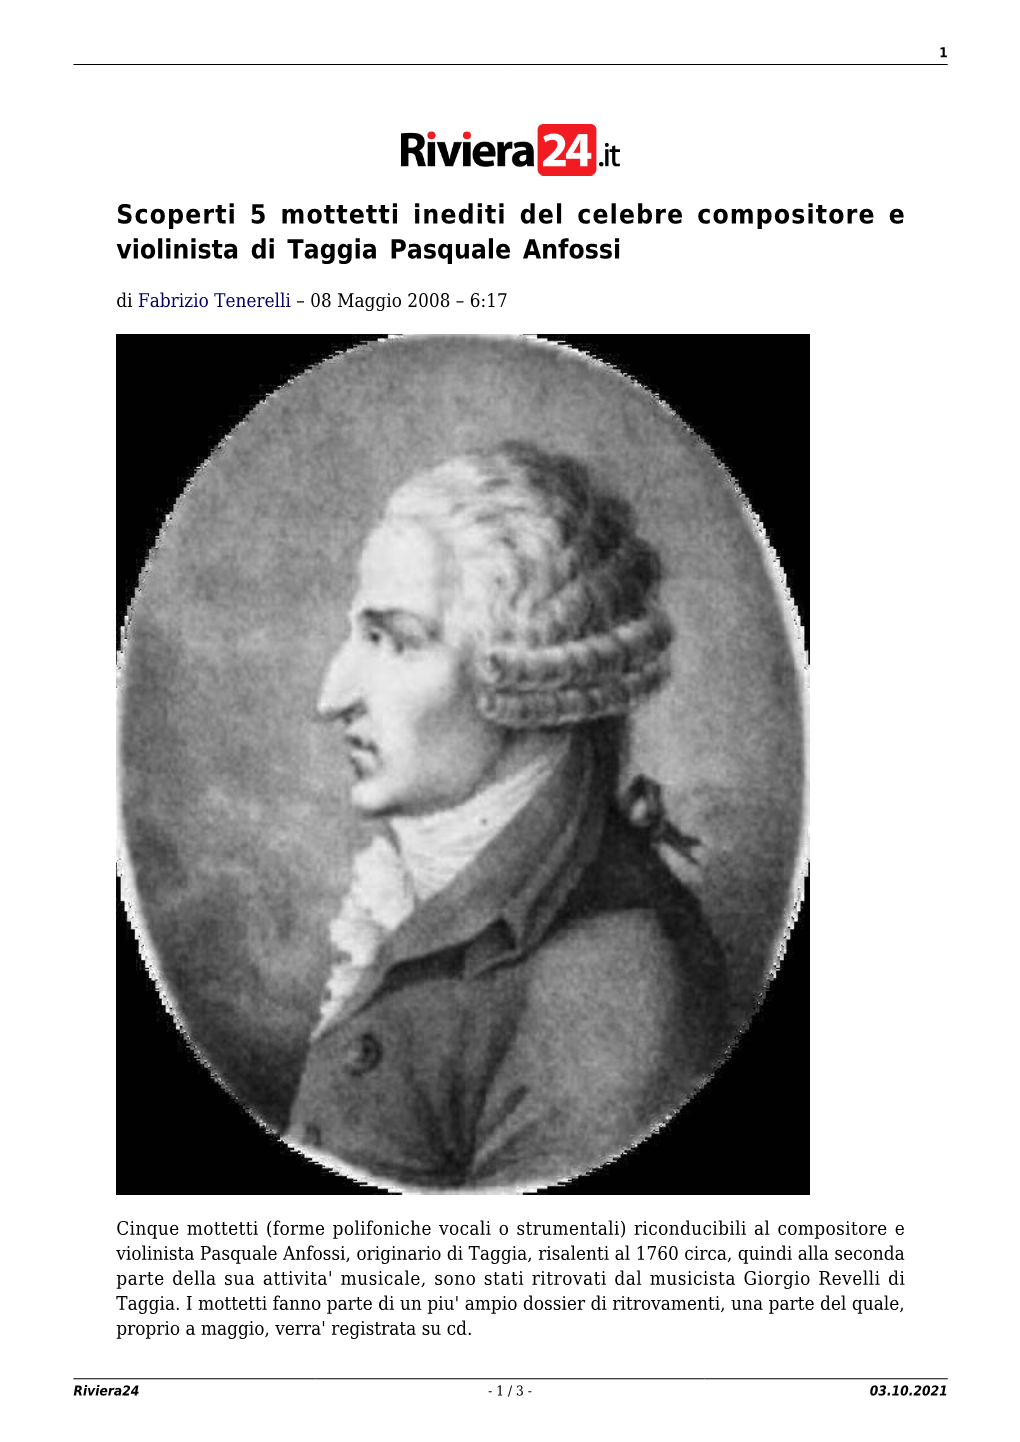 Scoperti 5 Mottetti Inediti Del Celebre Compositore E Violinista Di Taggia Pasquale Anfossi